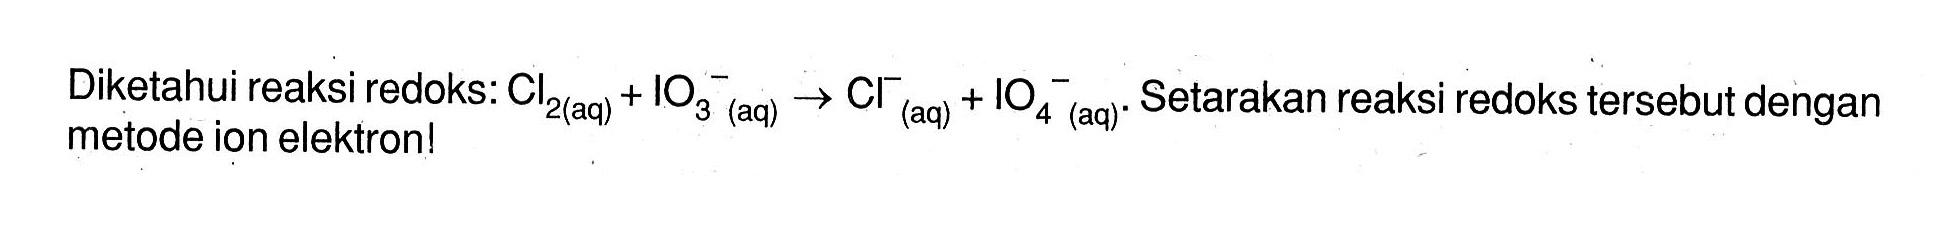 Diketahui reaksi redoks: Cl2 (aq) + IO3^- (aq) -> Cl^- + IO4^- (aq). Setarakan reaksi redoks tersebut dengan metode ion elektron!